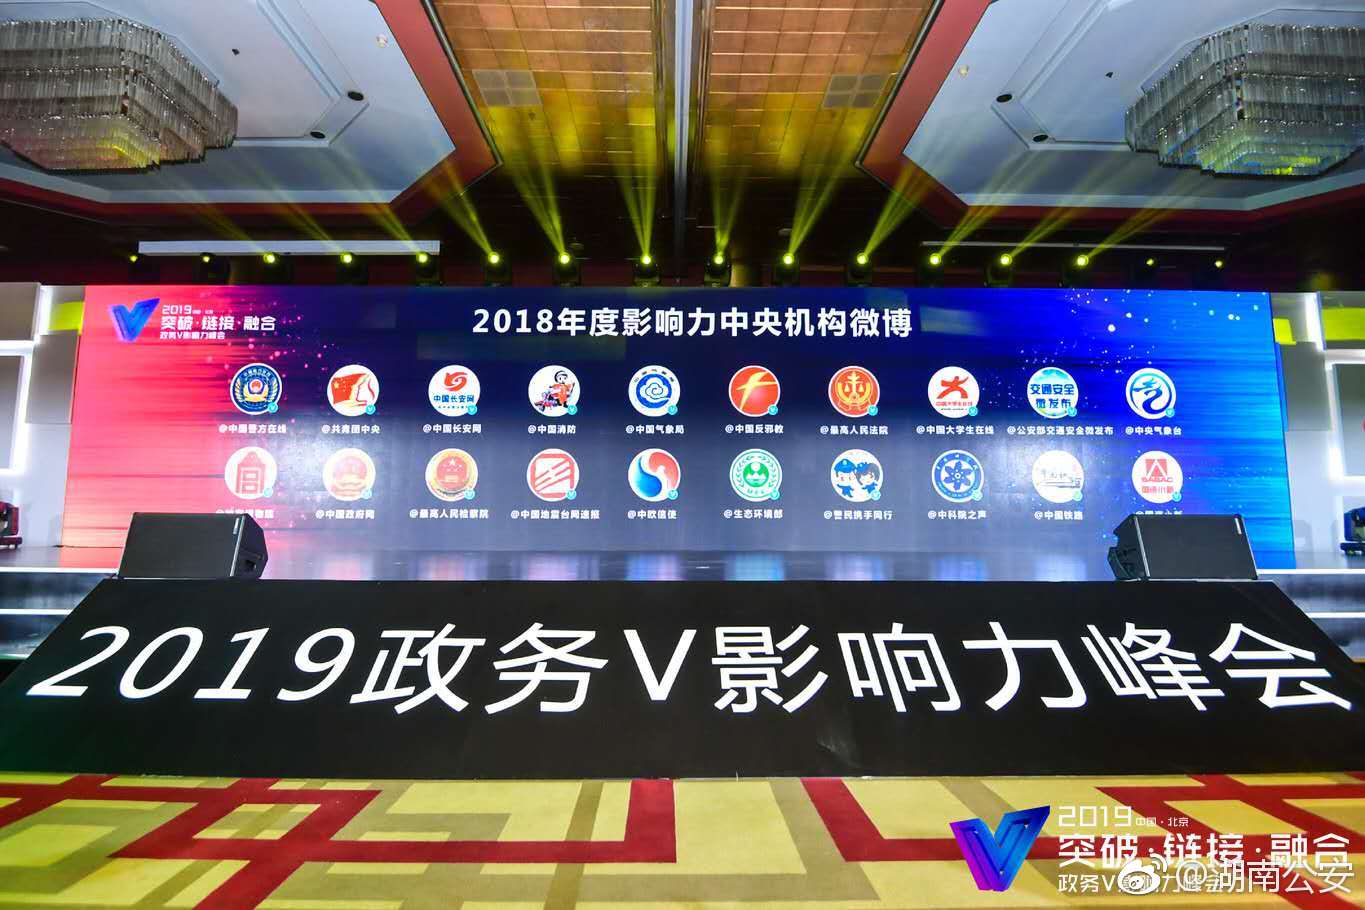 中国警方在线官方微博获得2018年度全国政务